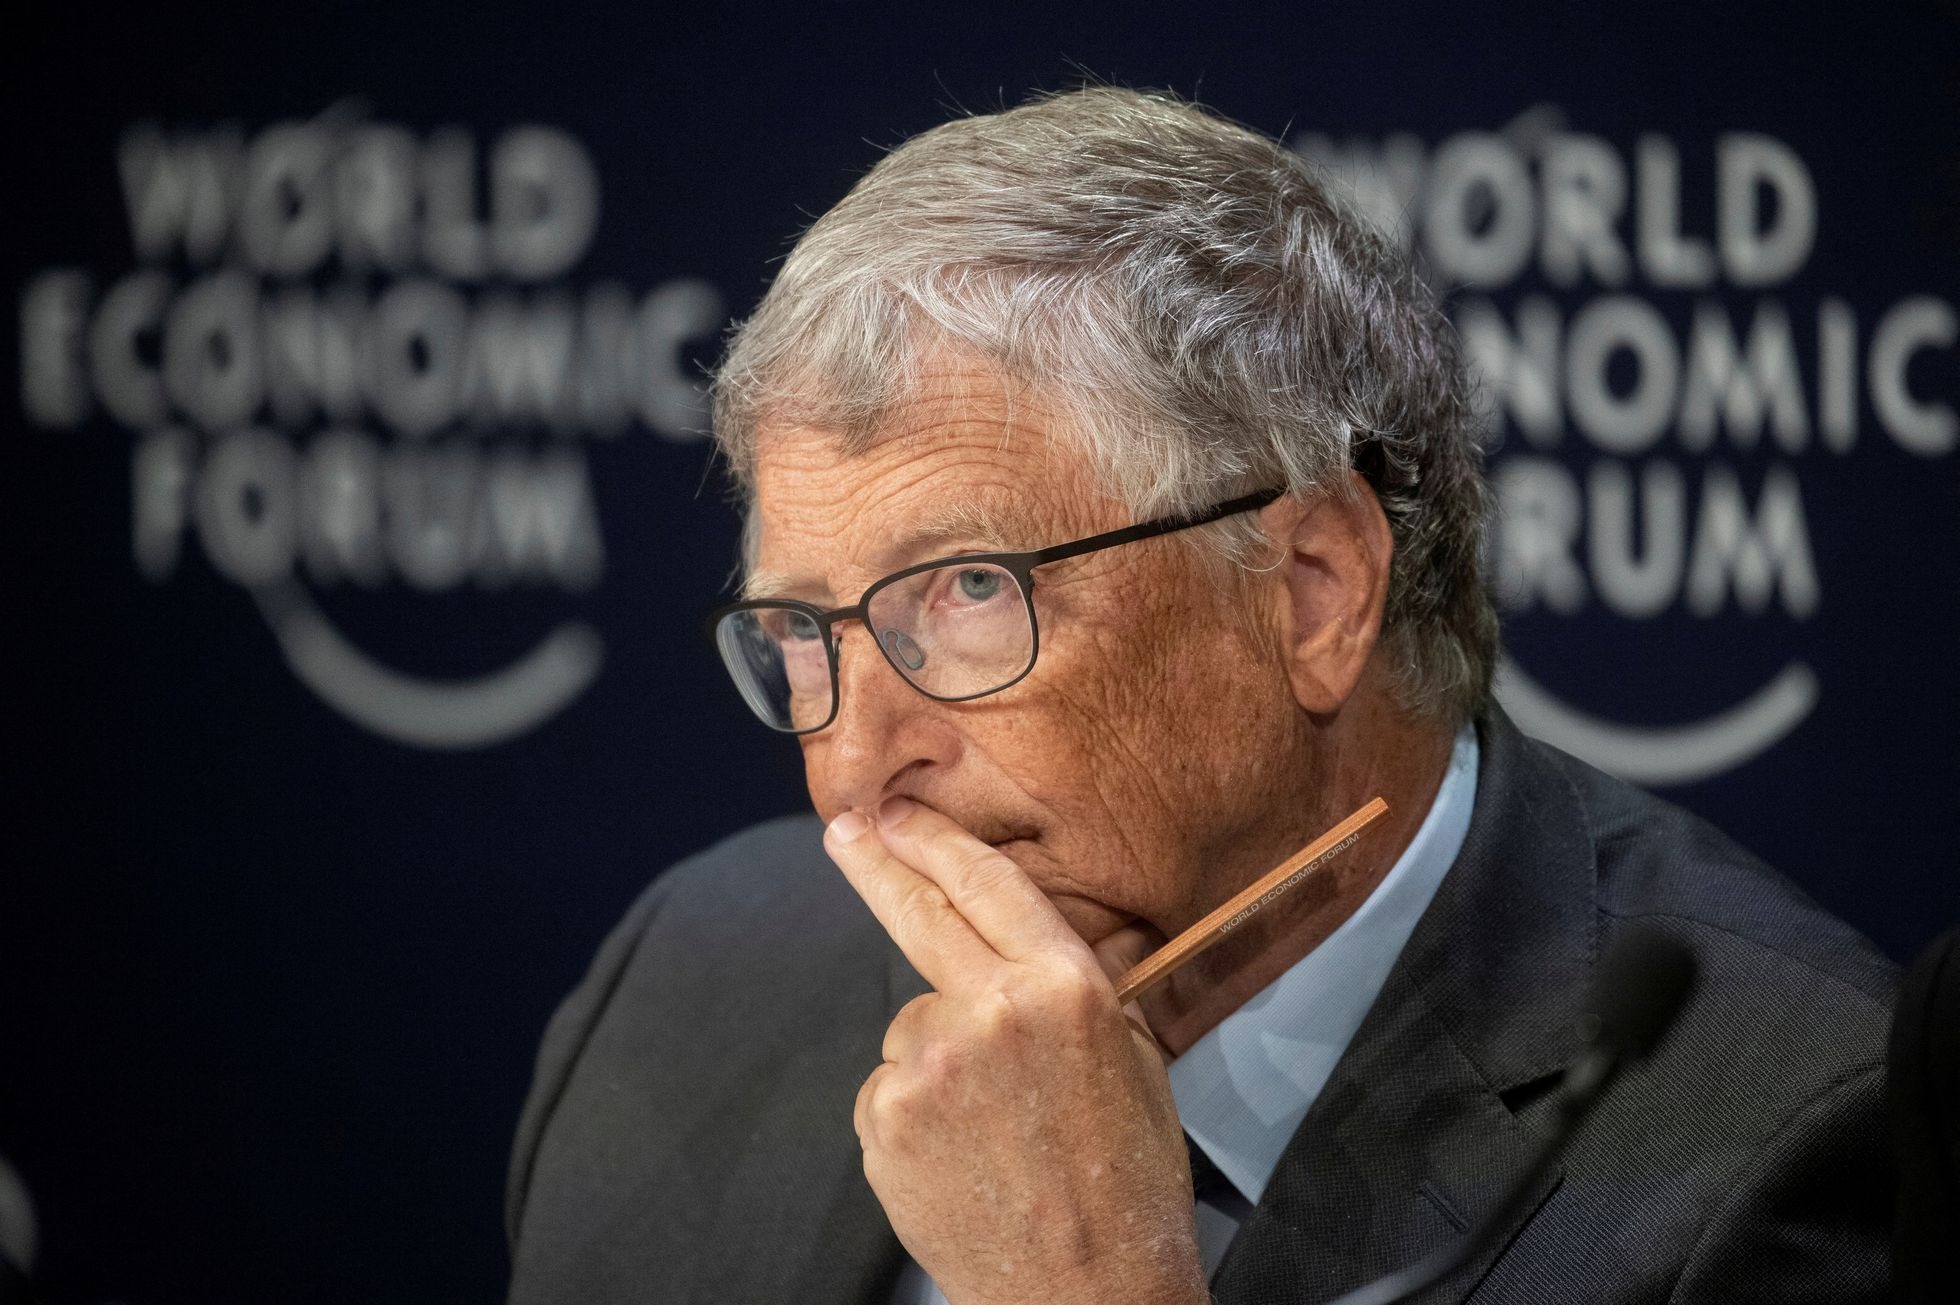 Preguntas íntimas y sexualmente explícitas: las entrevistas a mujeres para trabajar con Bill Gates